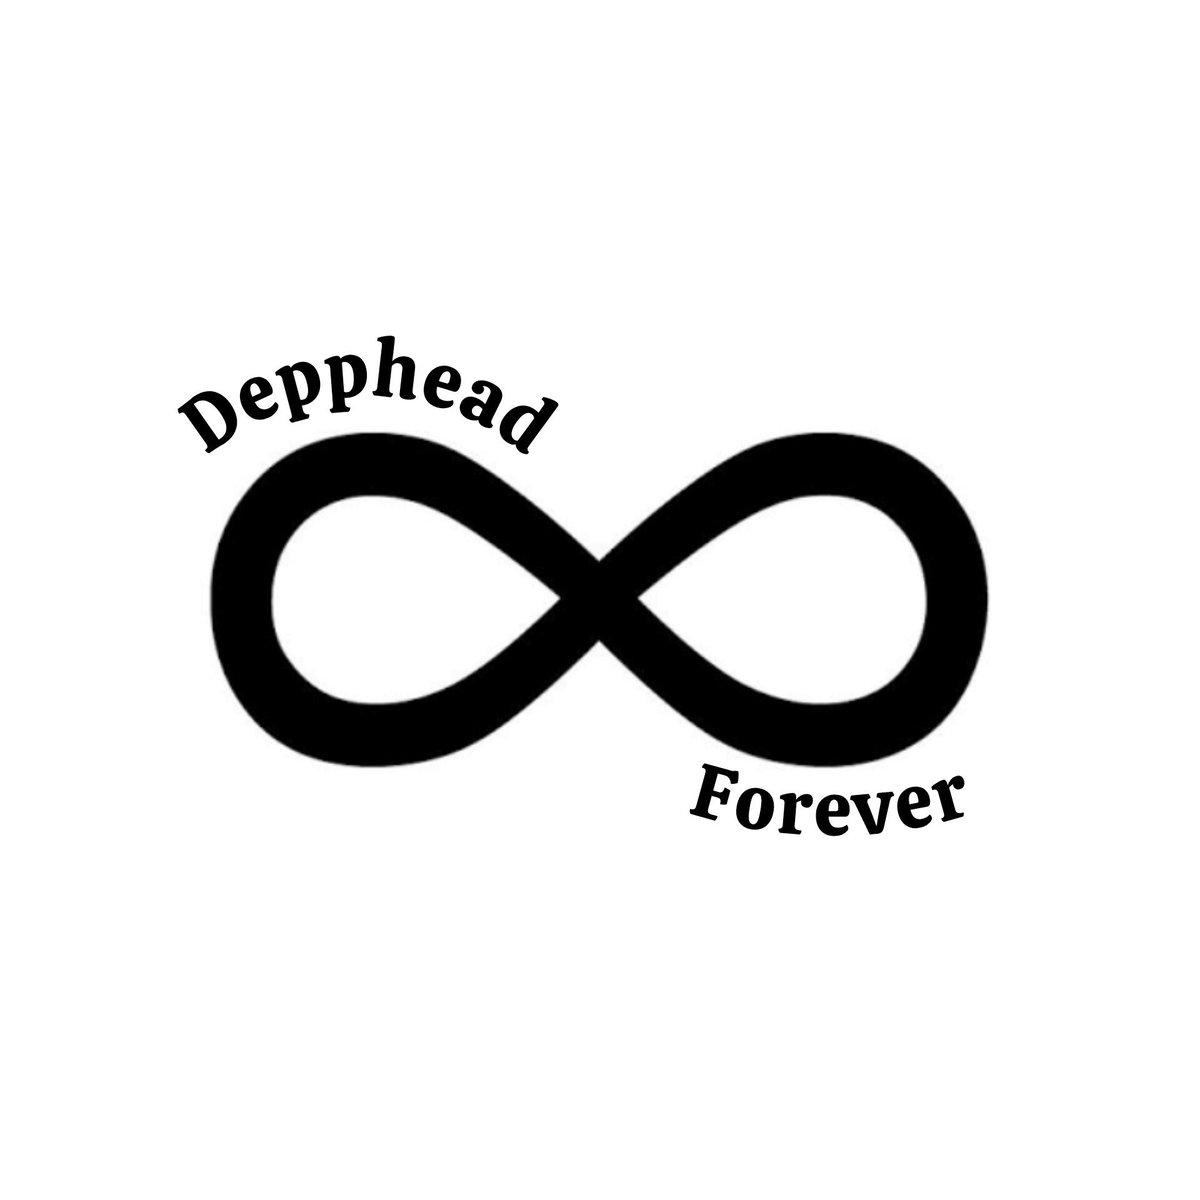 ✨️ Depphead Forever ✨️